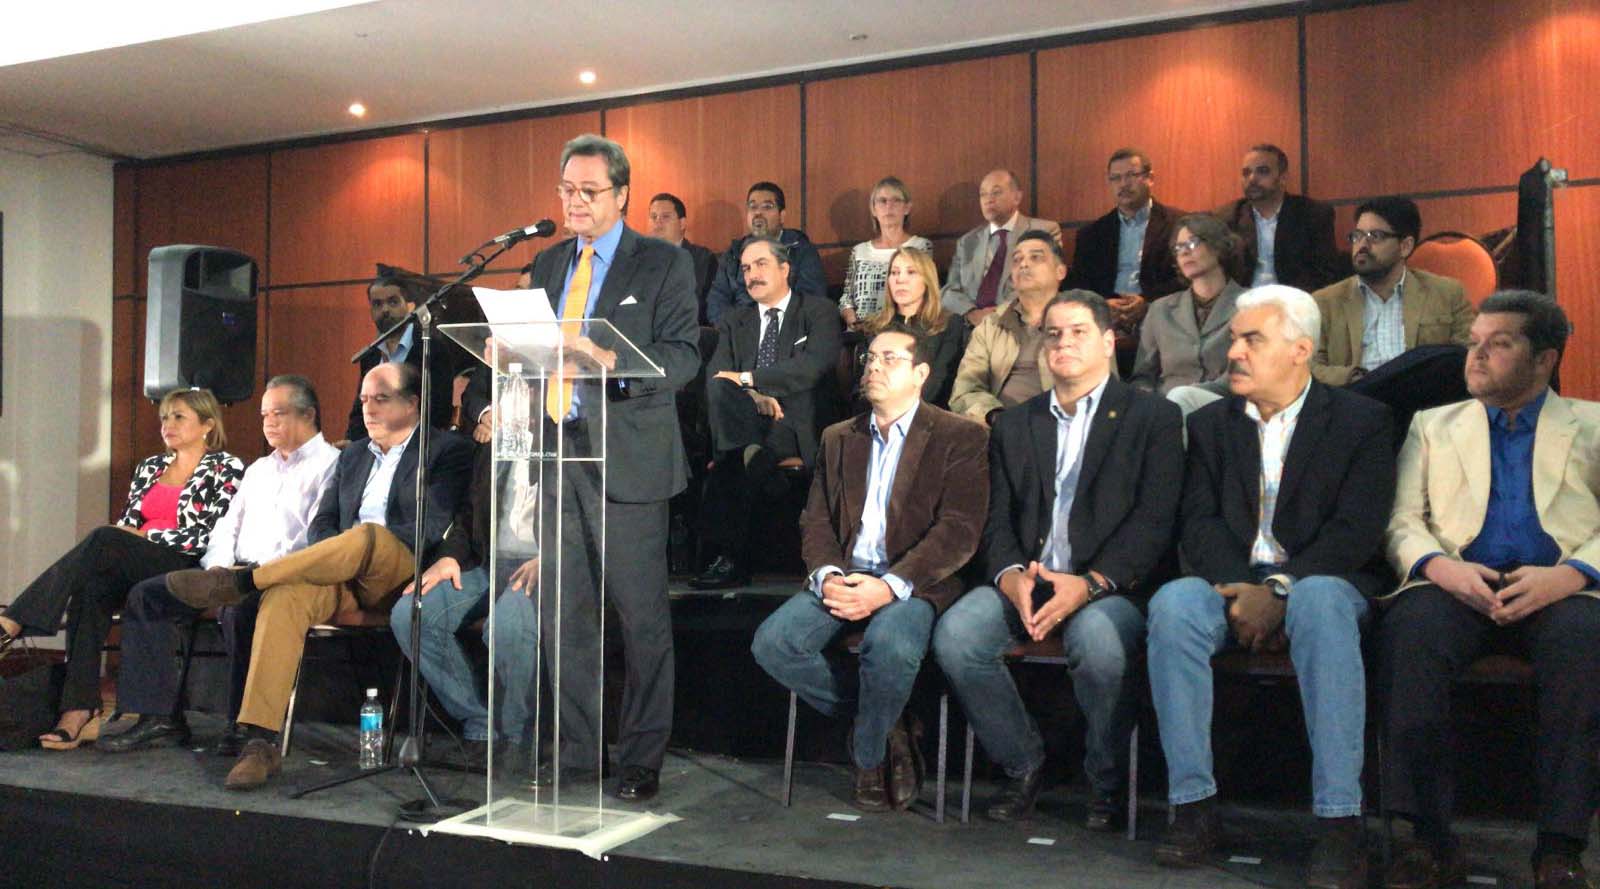 Jorge Roig, ex presidente de Fedecámaras, fue la voz de la coalición durante la rueda de prensa ofrecida este 27 de noviembre